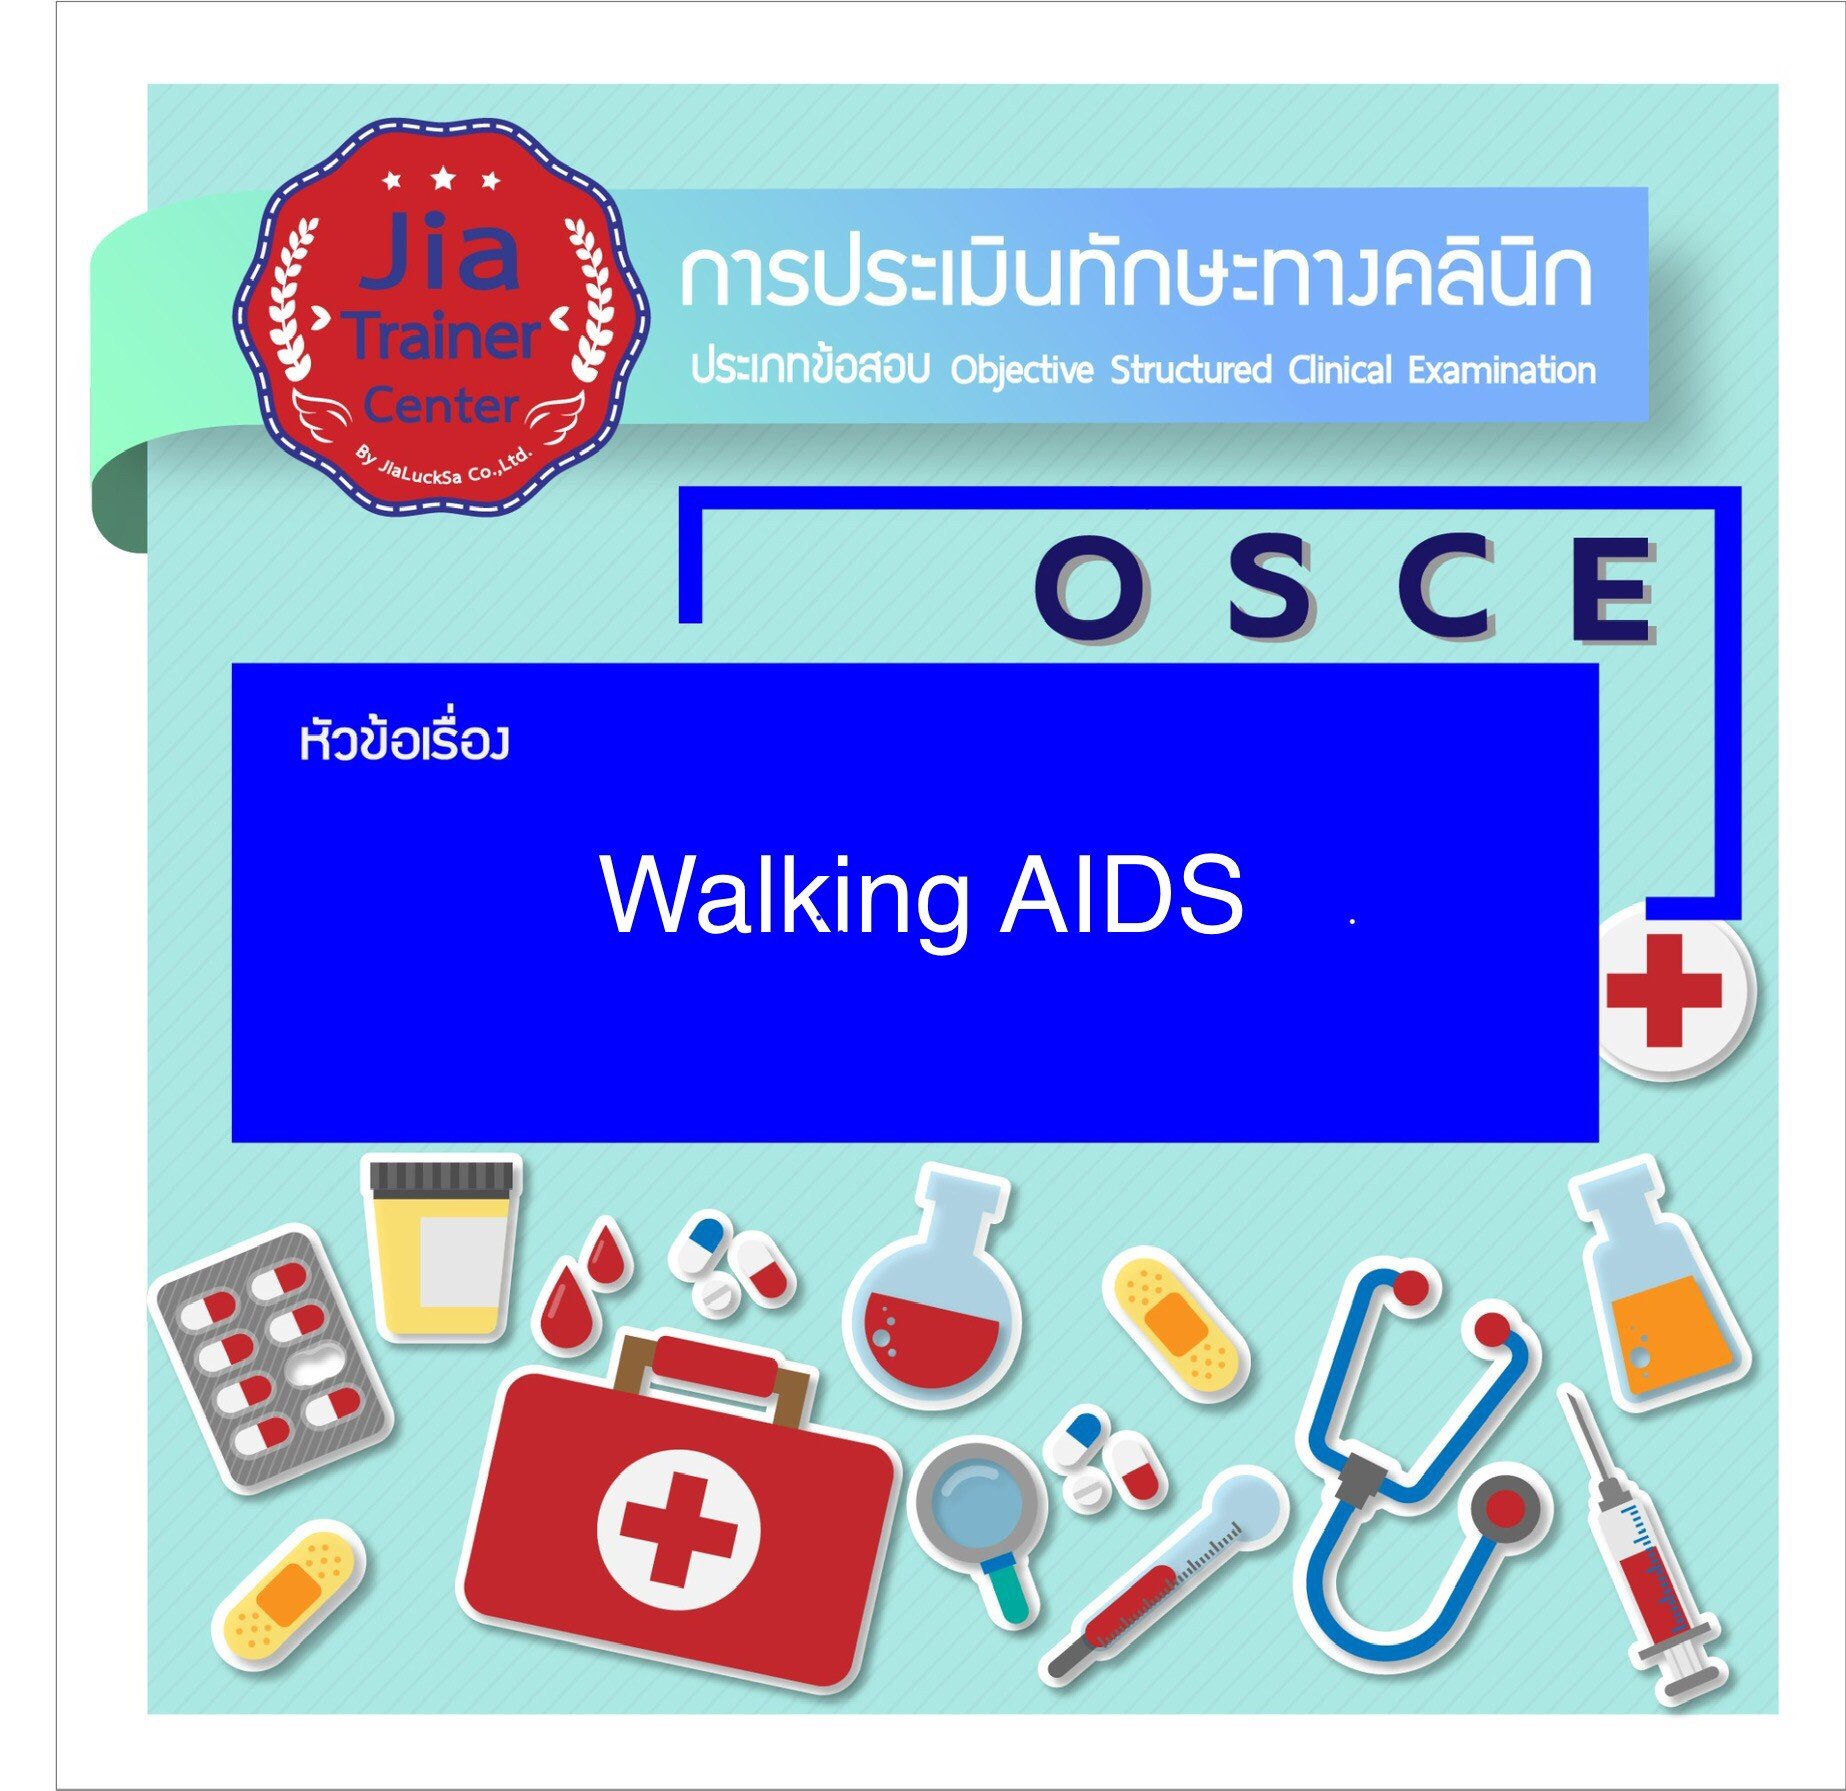 Osce-Walking AIDS